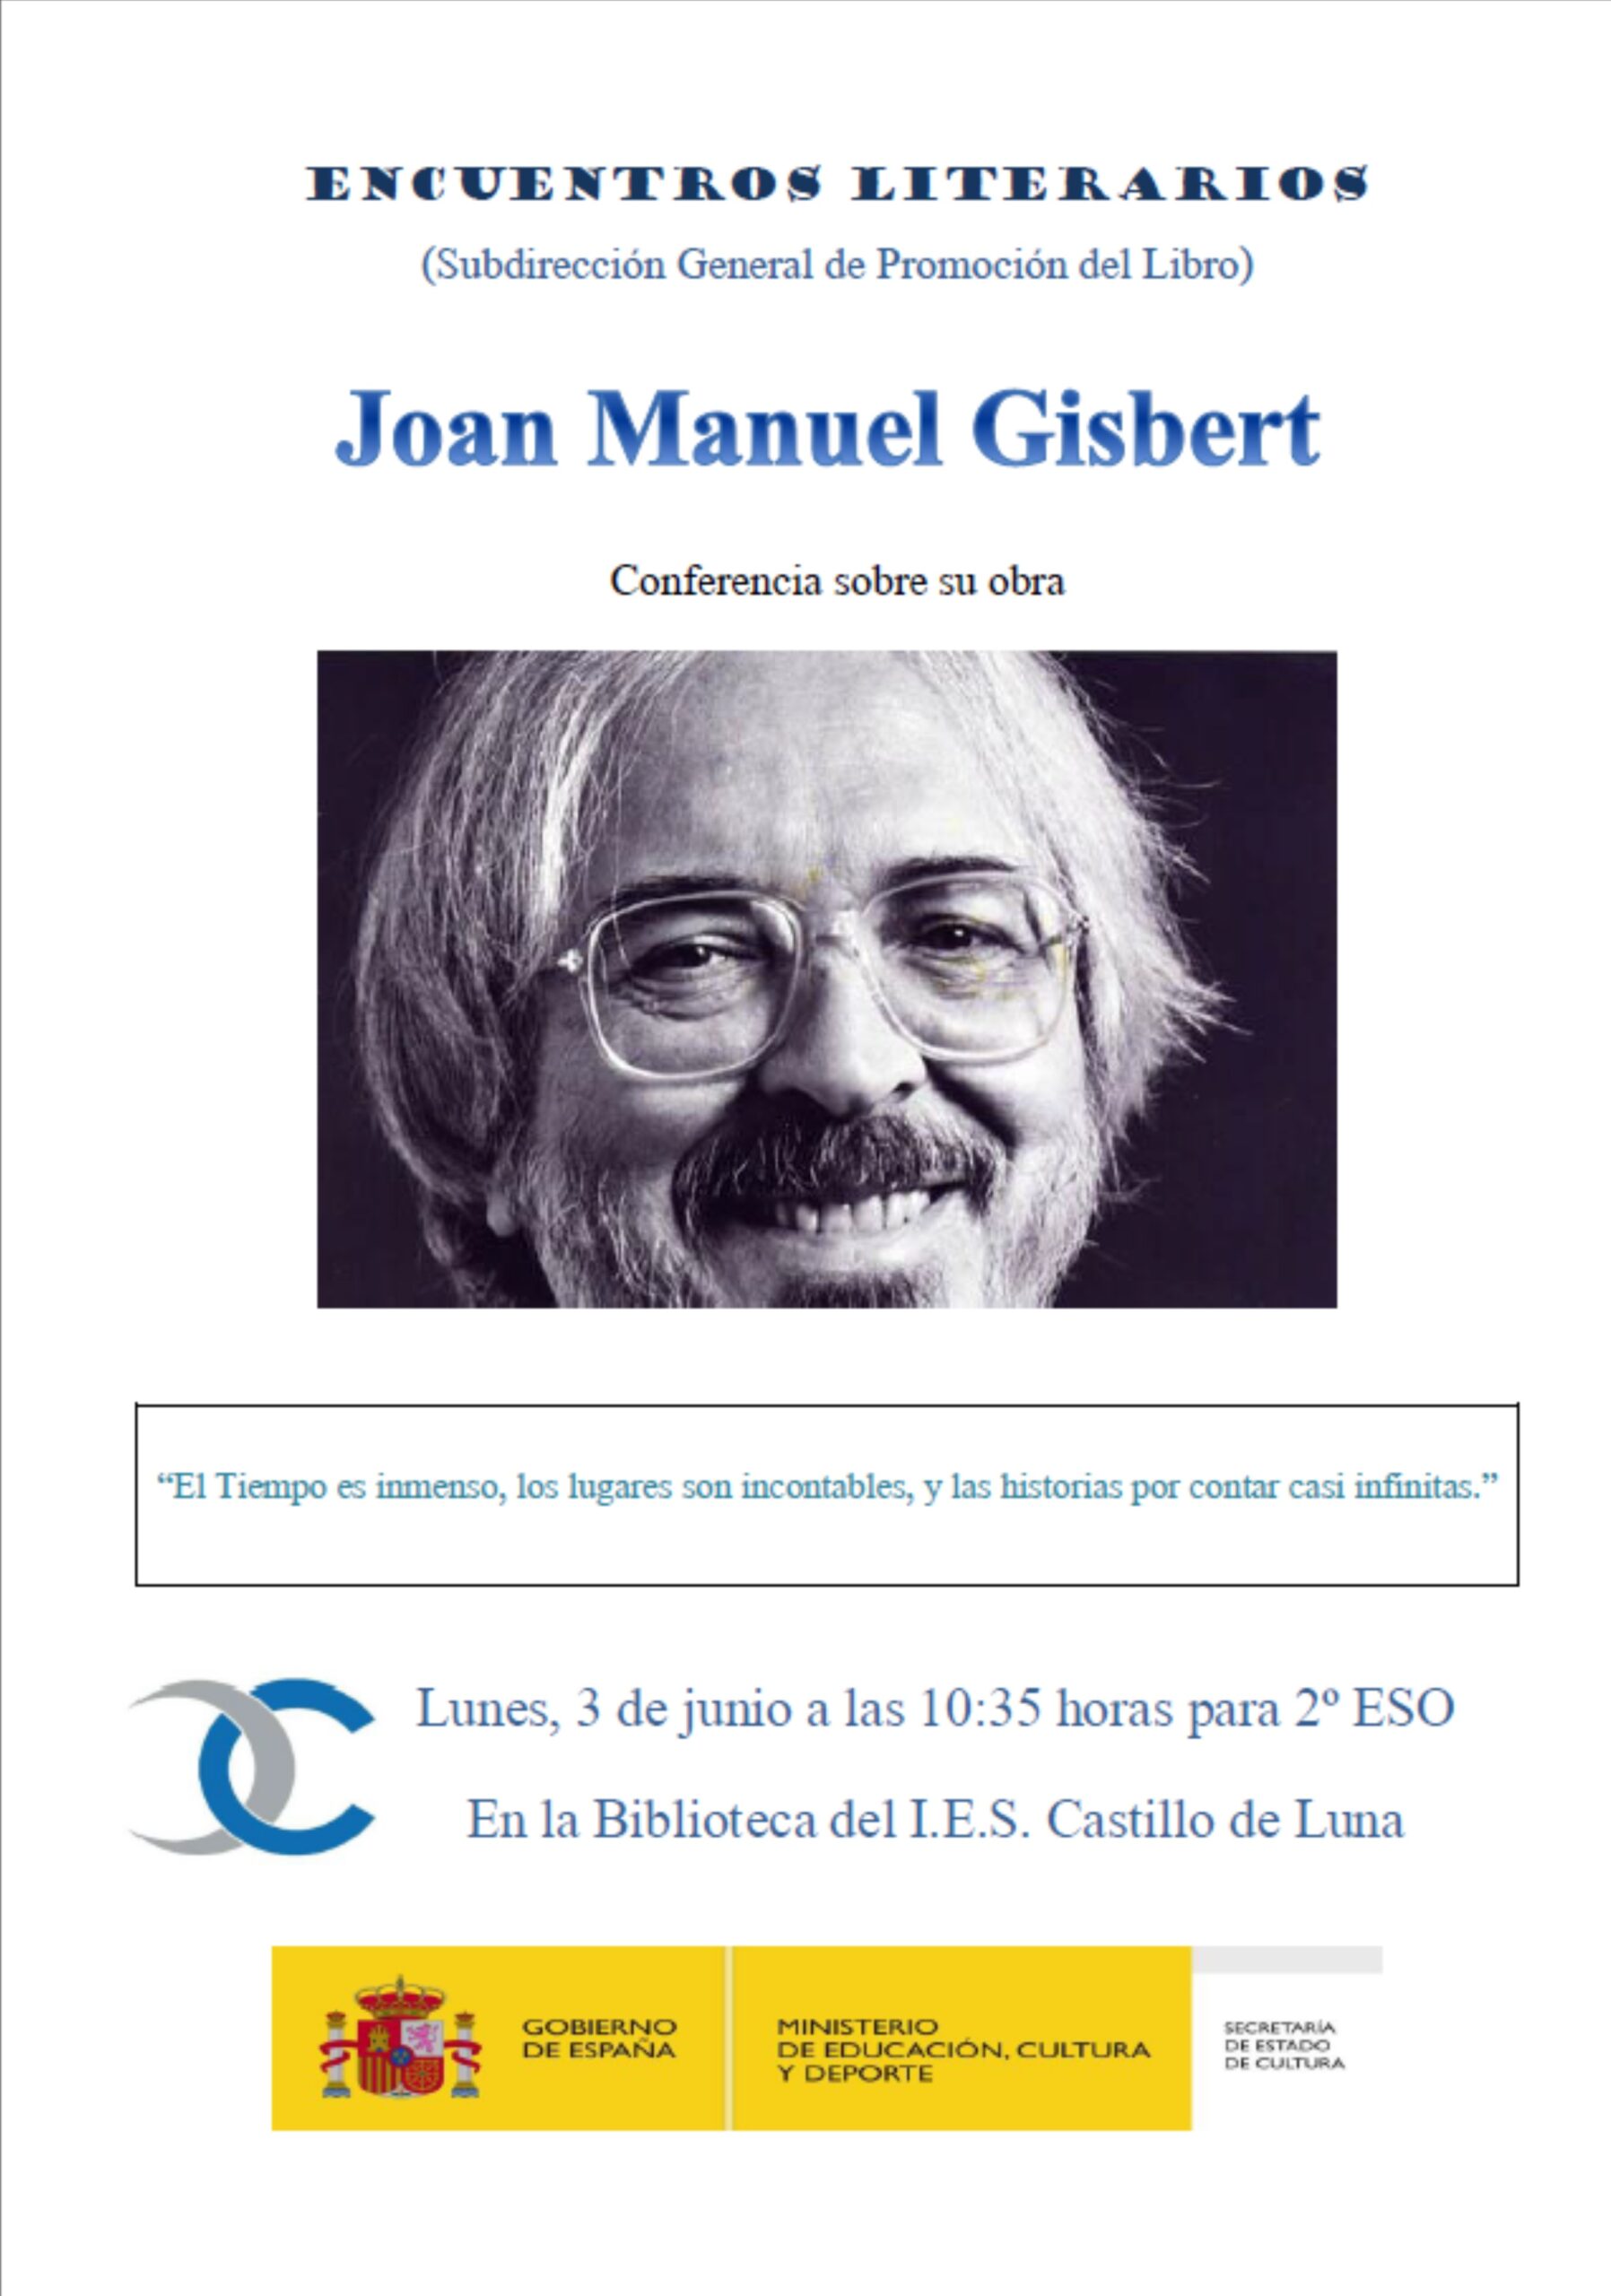 CONFERENCIA DE JOAN MANUEL GISBERT